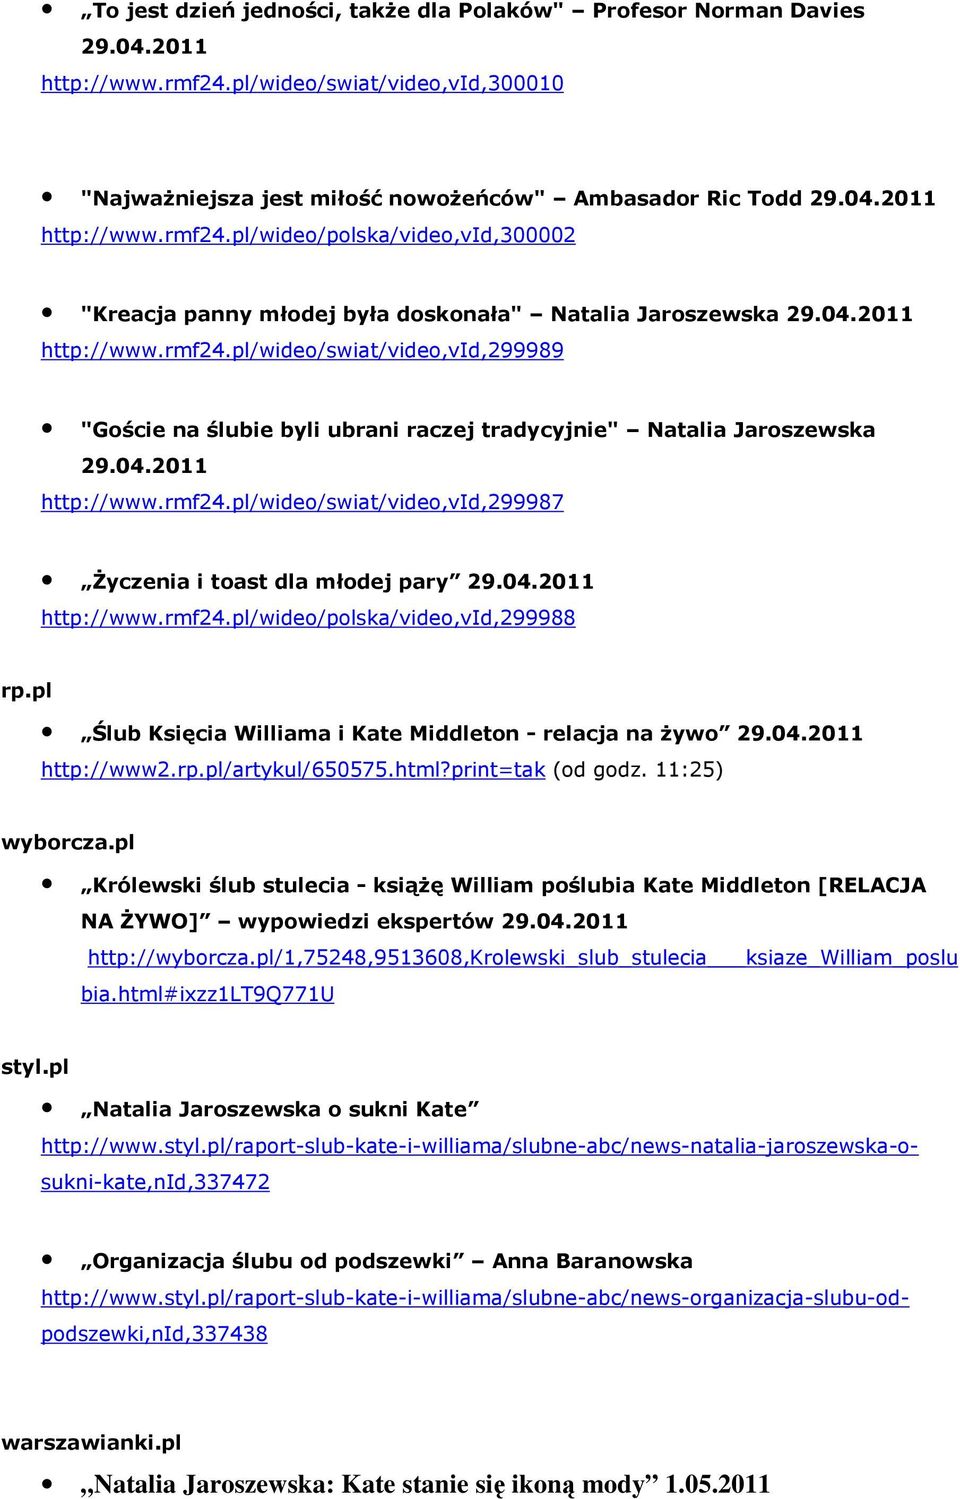 rmf24.pl/wideo/polska/video,vid,299988 rp.pl Ślub Księcia Williama i Kate Middleton - relacja na żywo http://www2.rp.pl/artykul/650575.html?print=tak (od godz. 11:25) wyborcza.